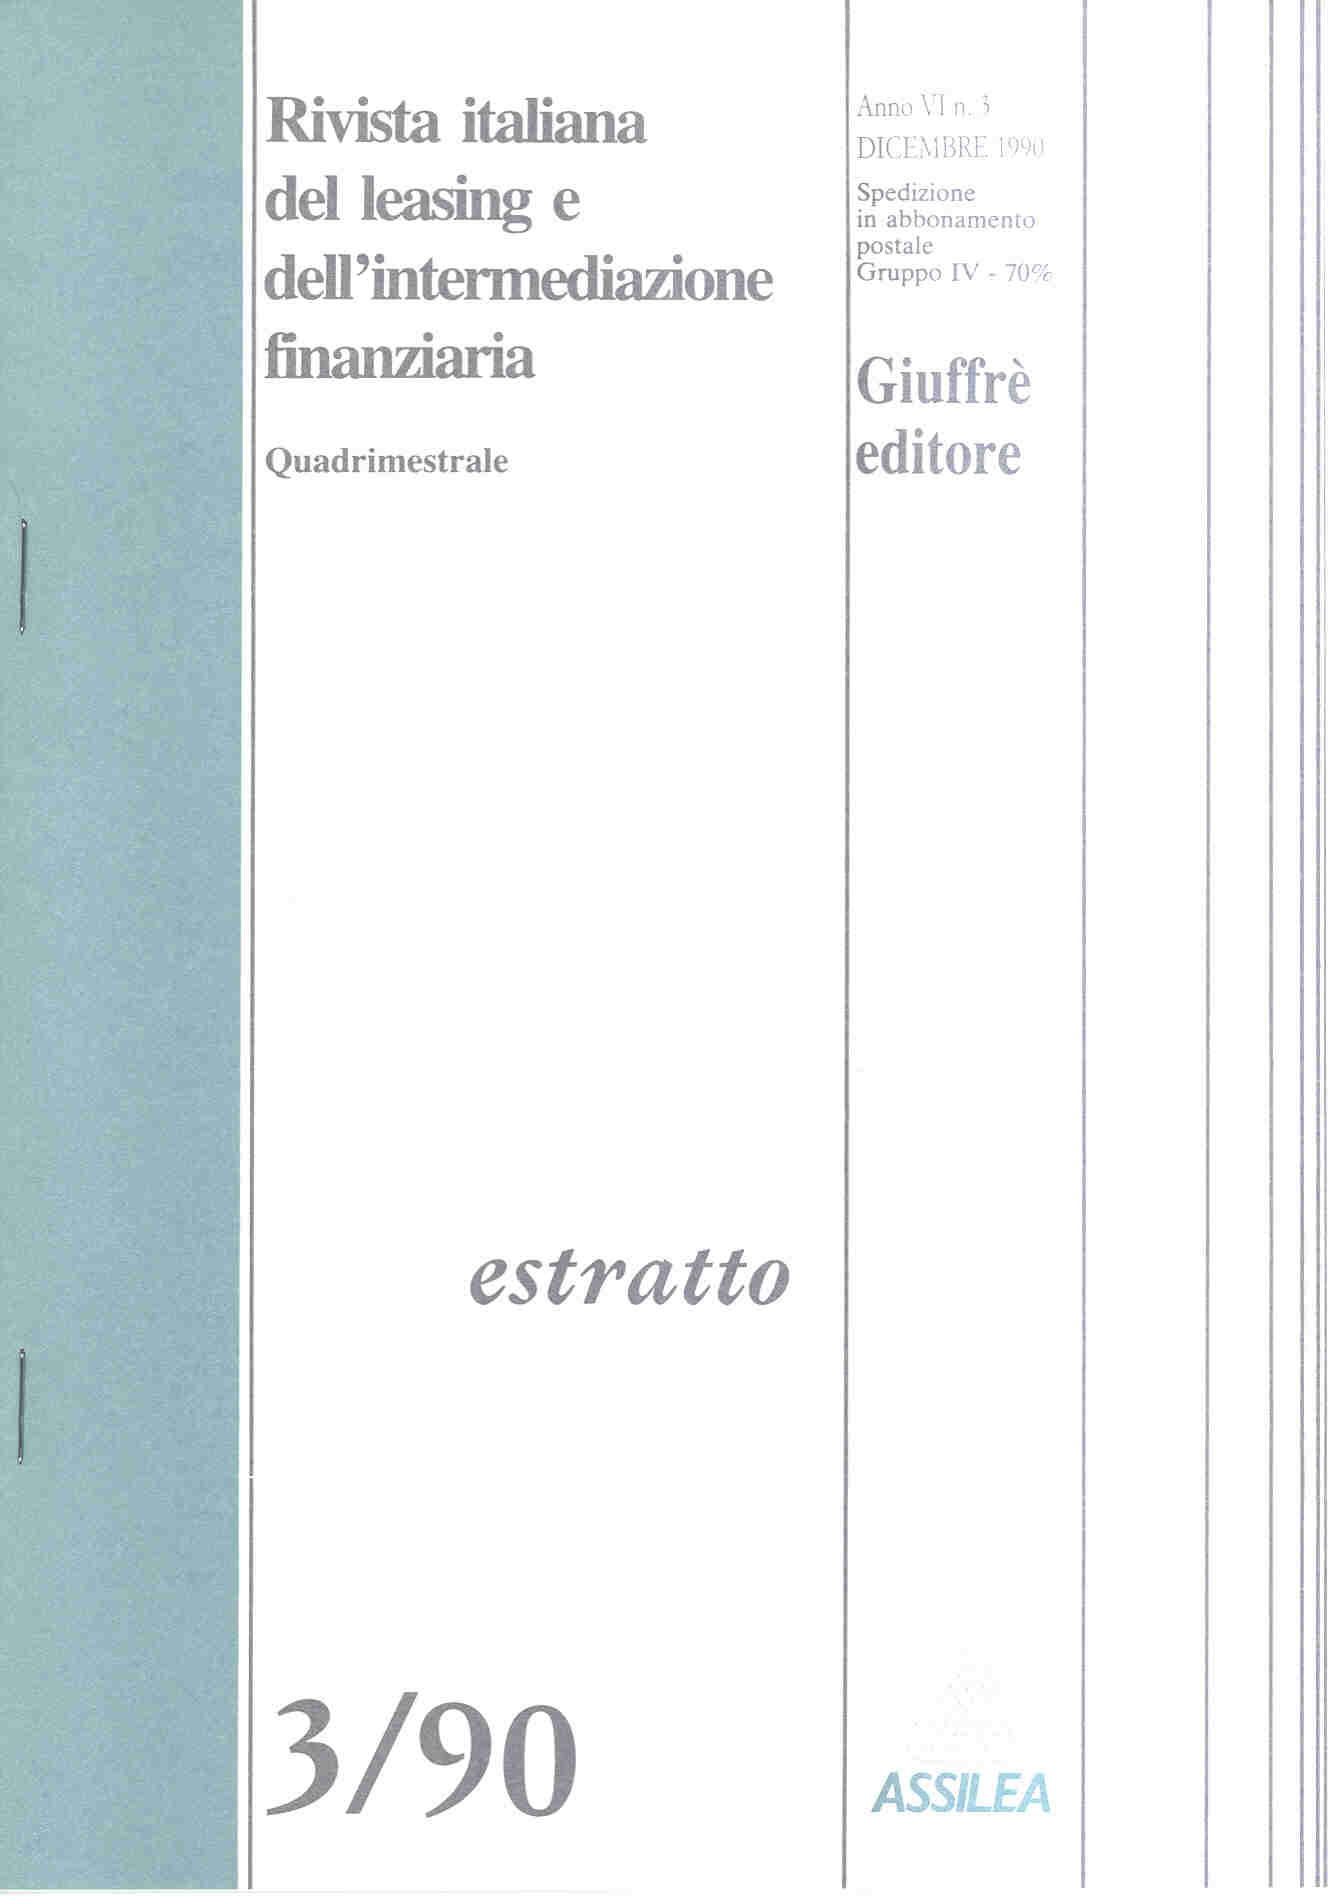 Rivista Italiana del leasing, Estratto 3-90, Amedeo Nigra